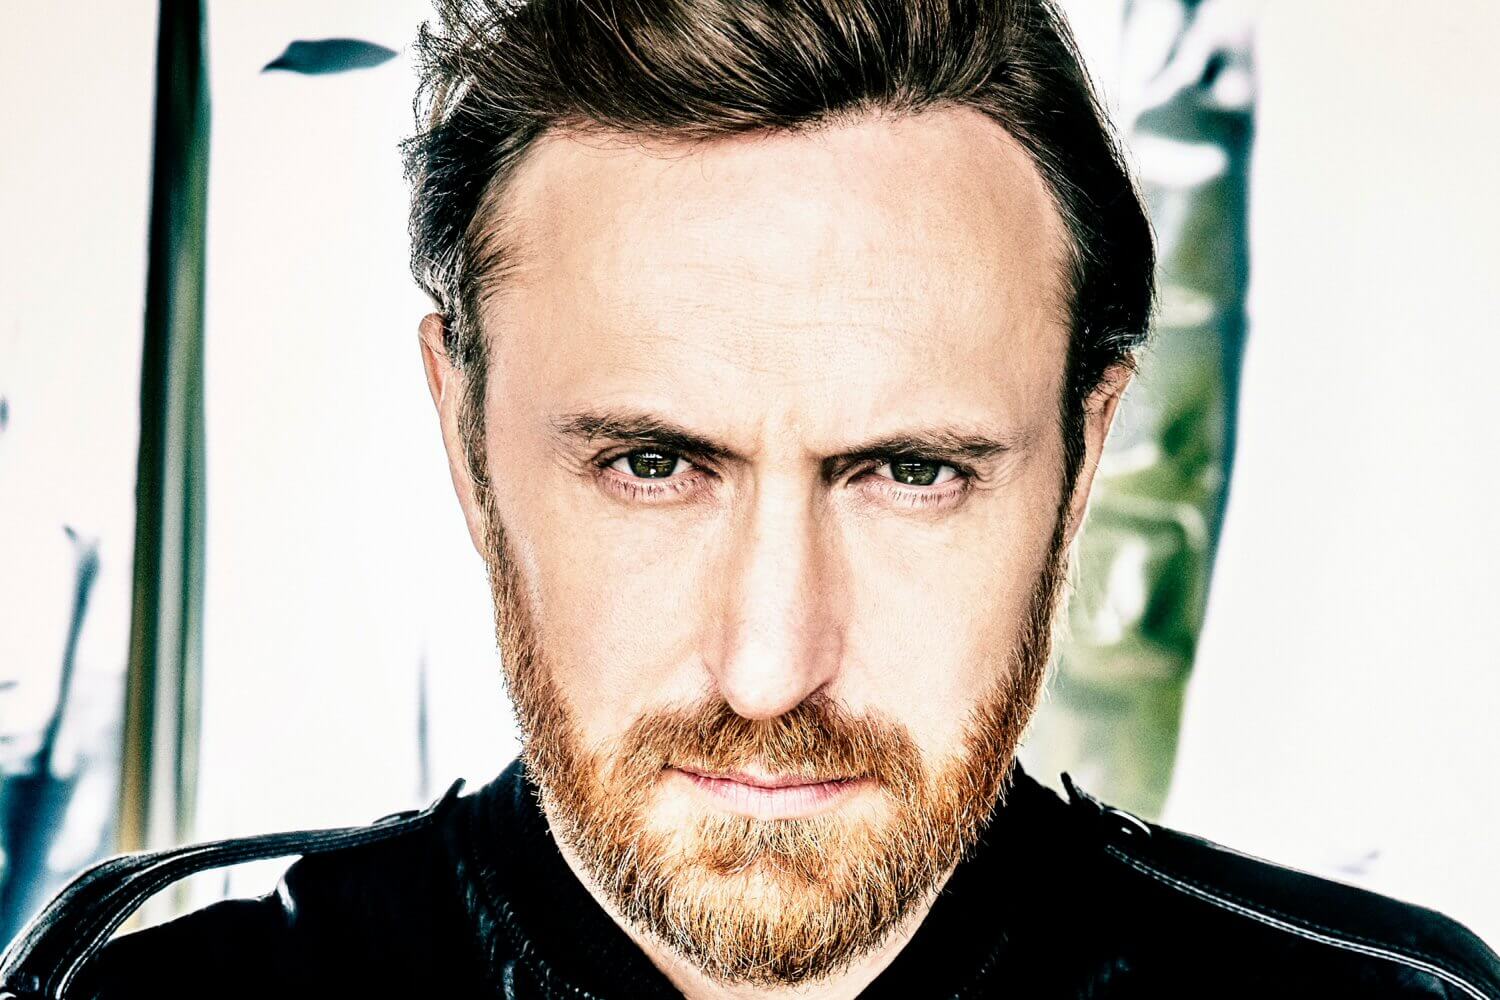 David Guetta: "Staram się jak najbardziej wyciszyć zanim wejdę na scenę"